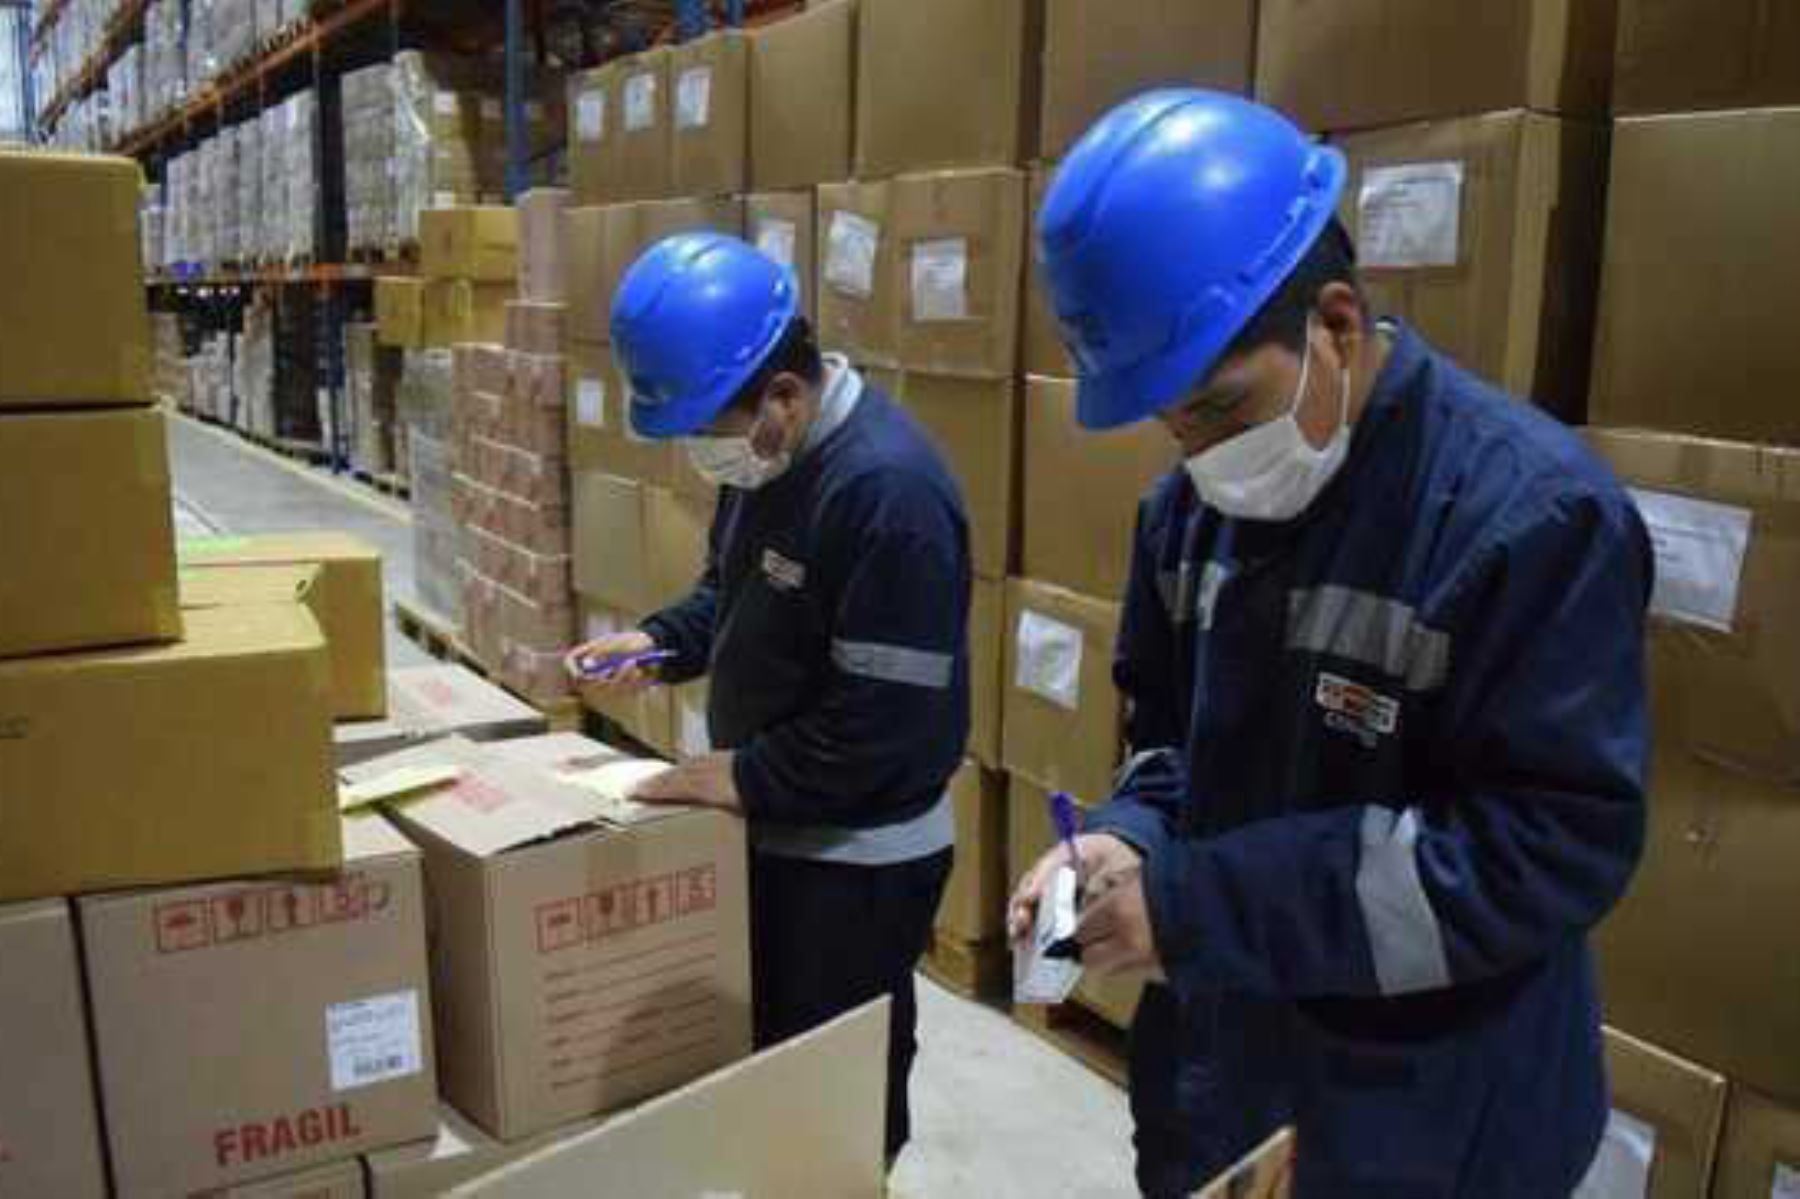 Minsa distribuyó más de 700 toneladas de suministros médicos a diferentes regiones durante setiembre para reforzar la lucha contra el covid-19. ANDINA/Difusión